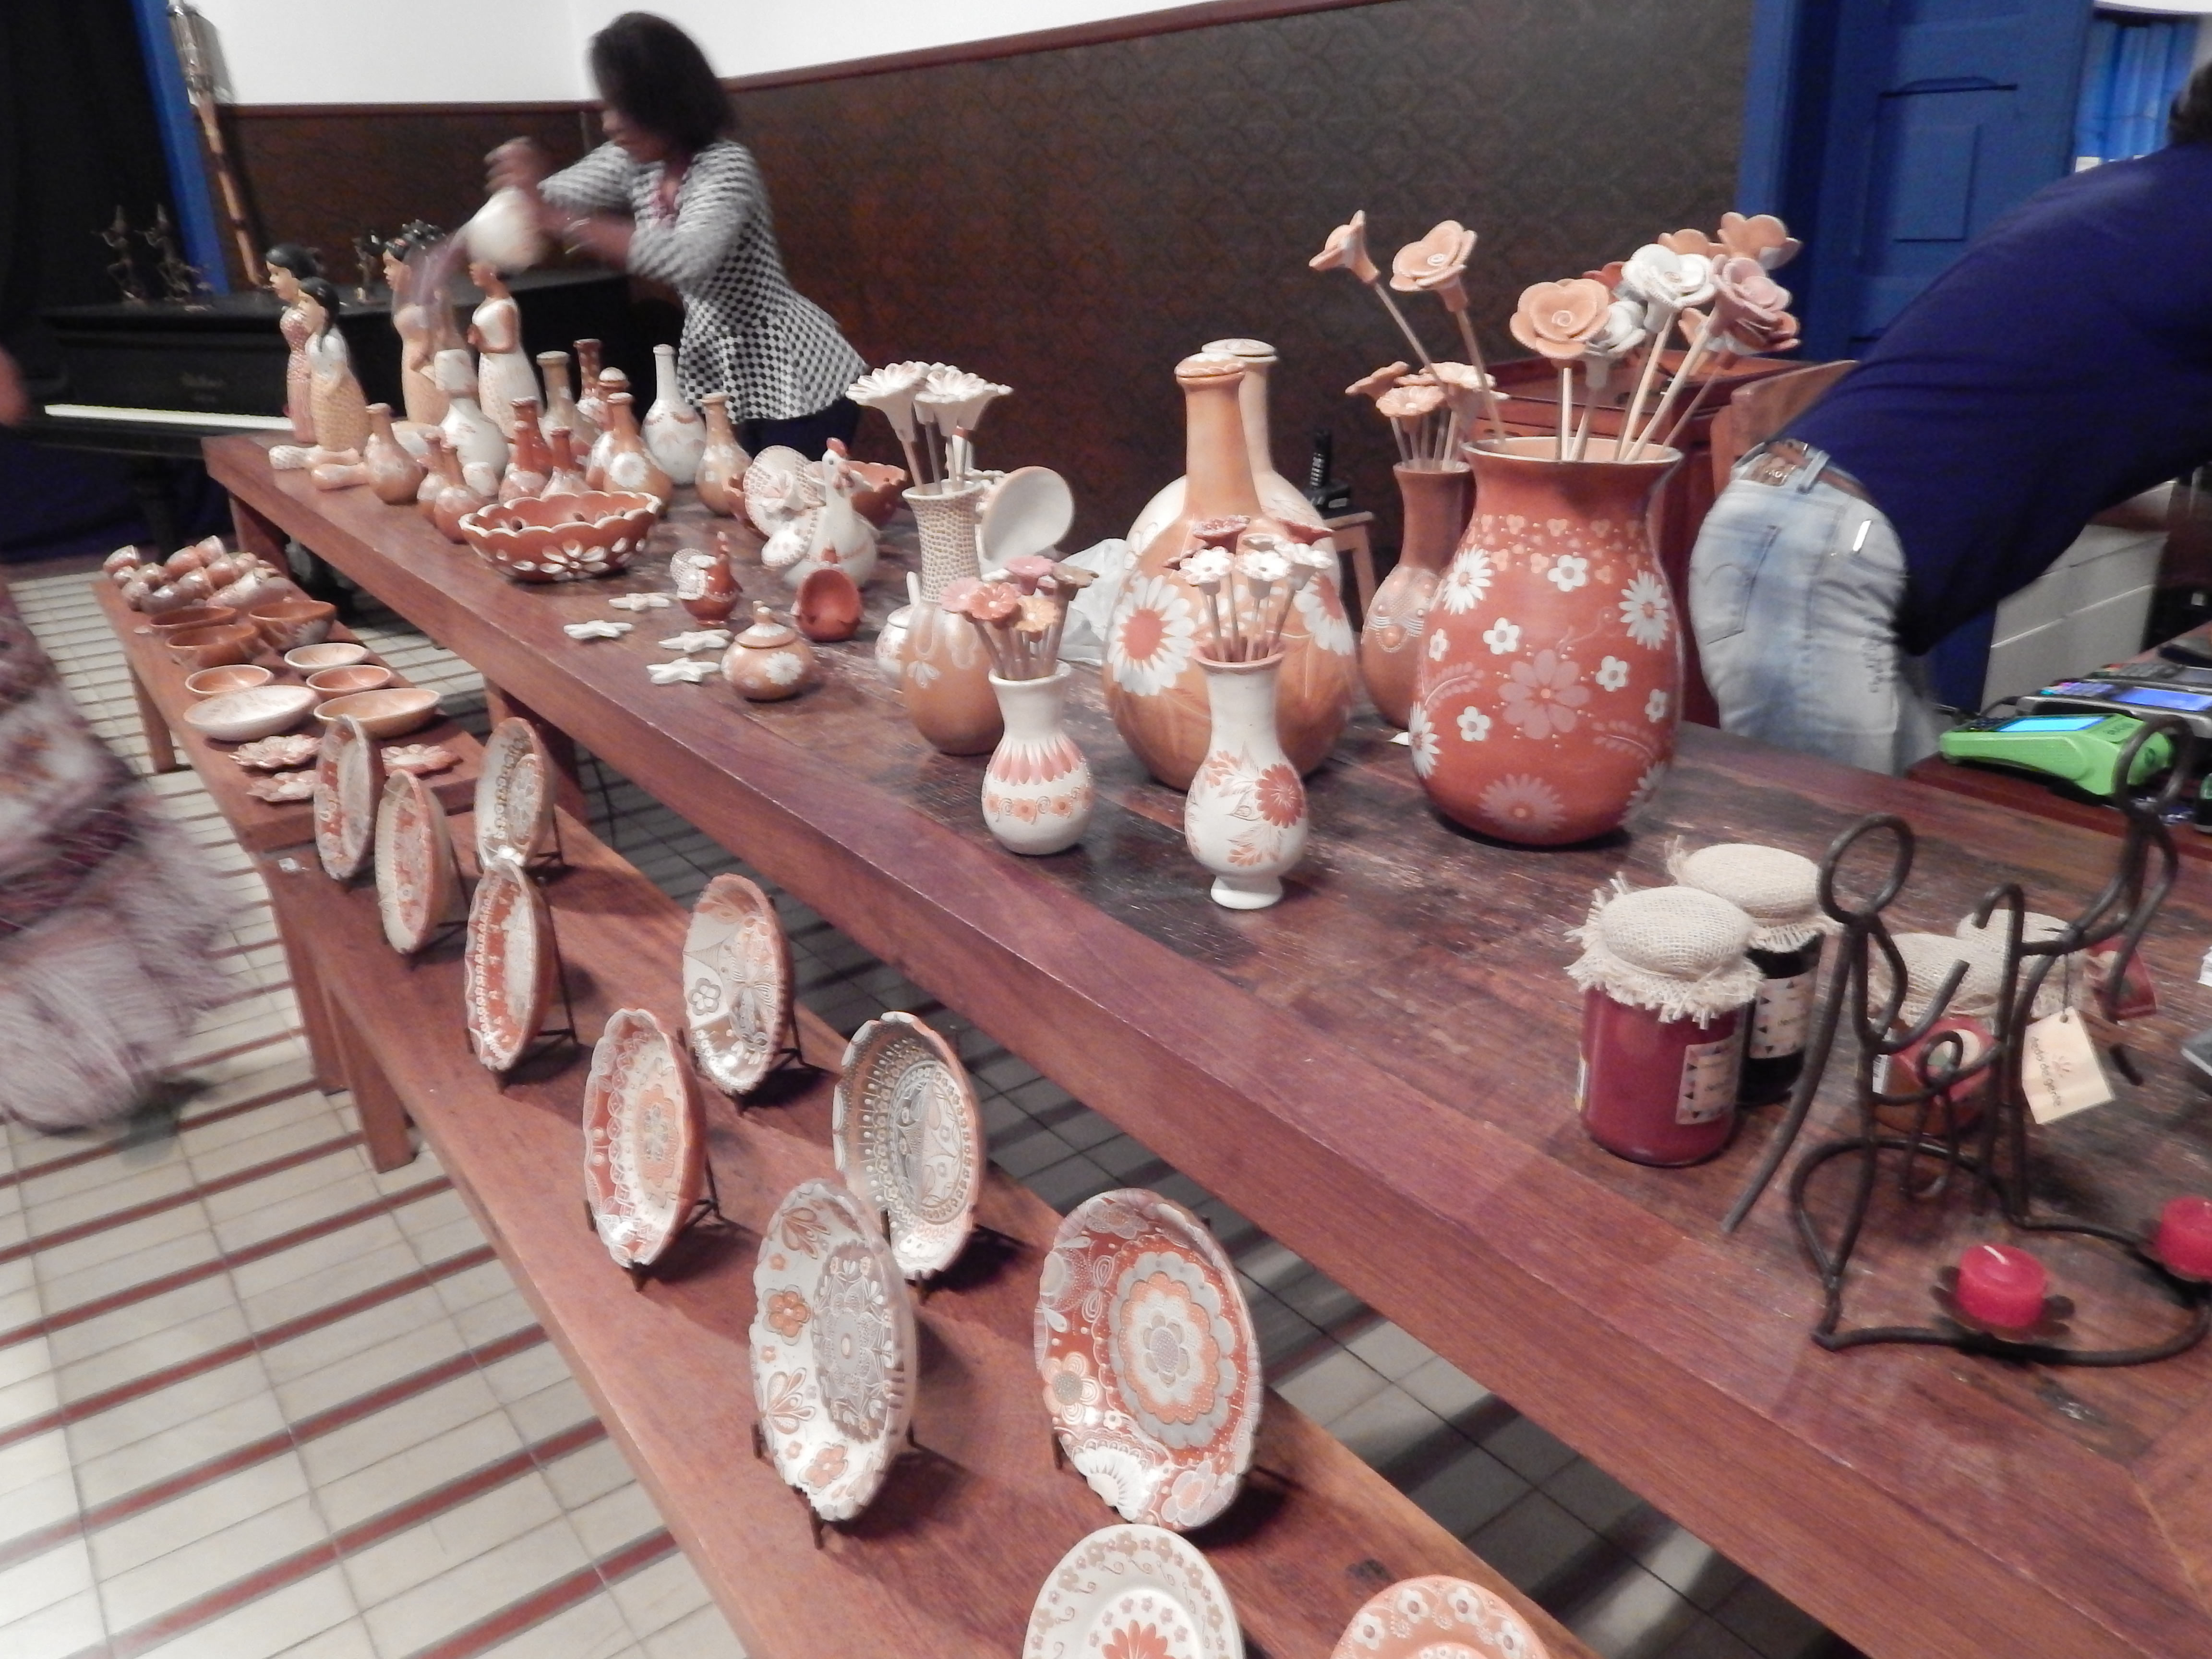 Exposição de cerâmicas feitas artesanalmente